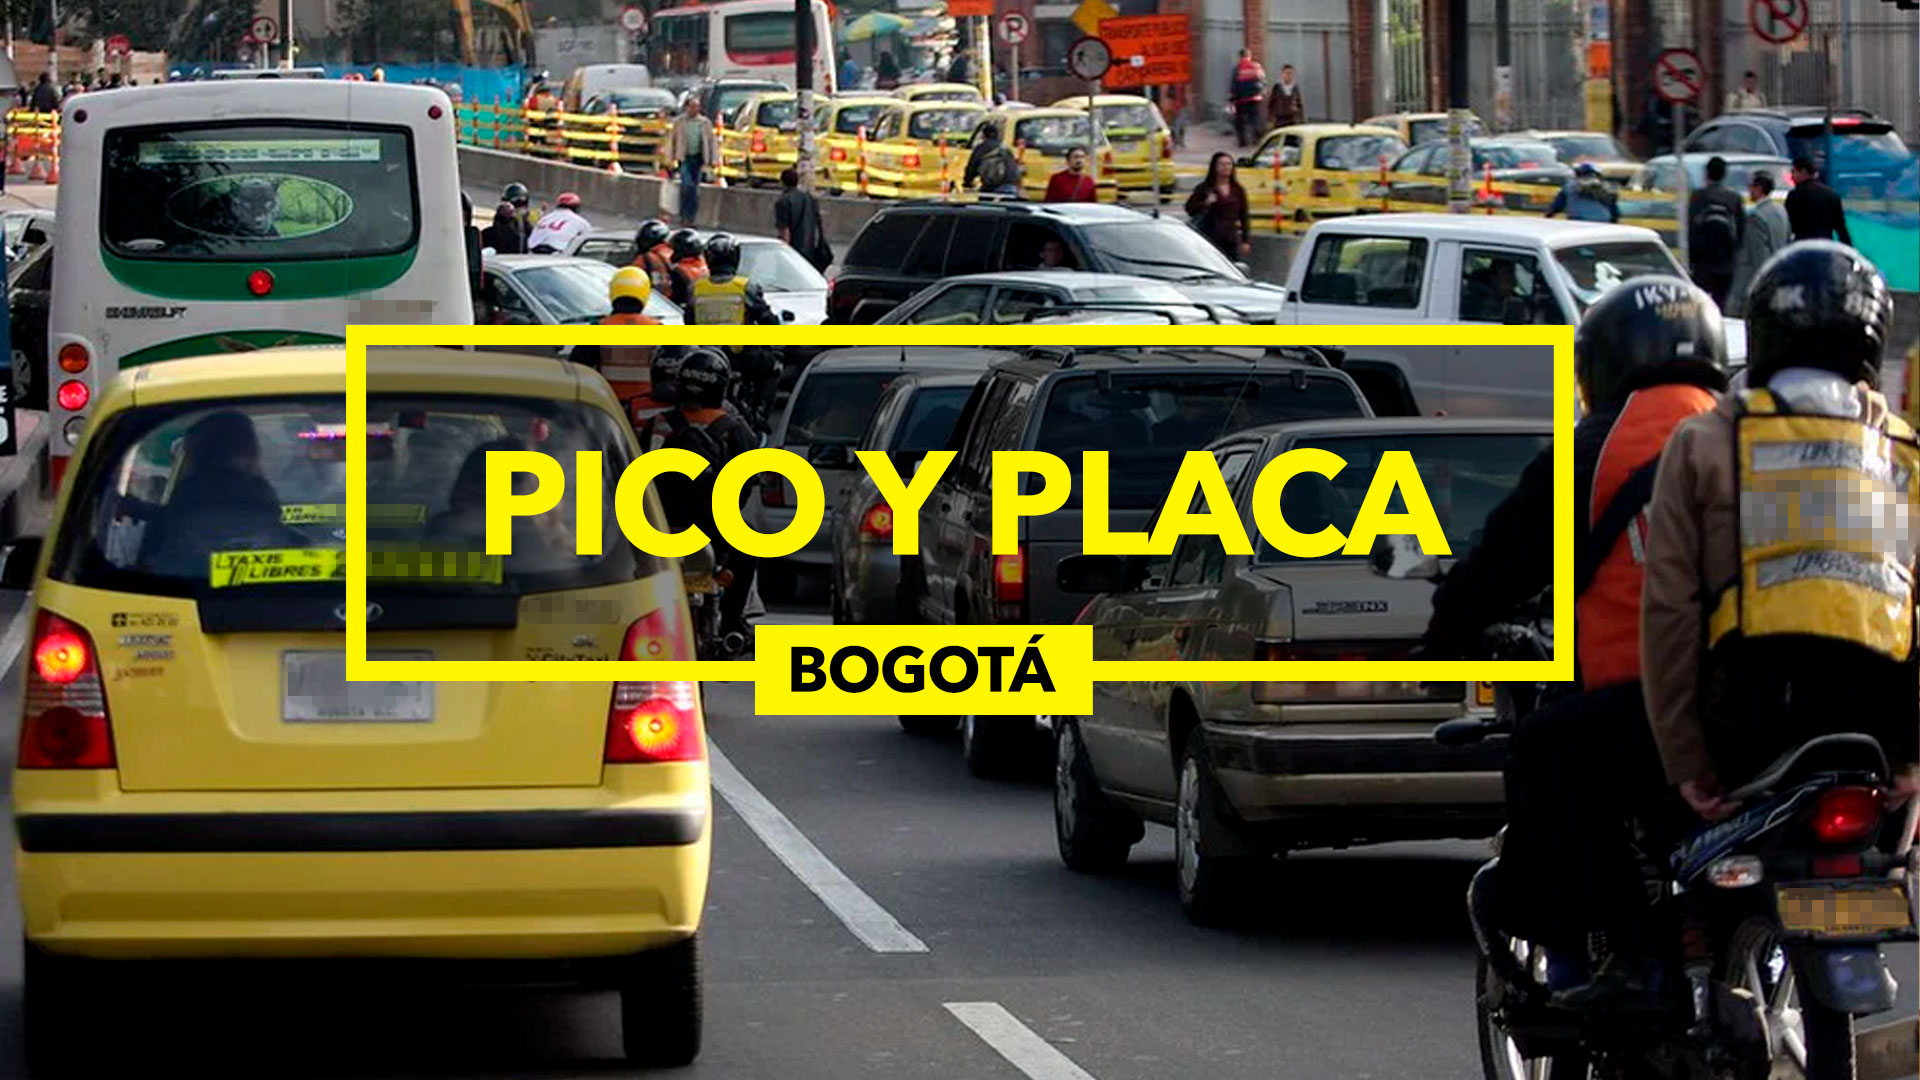 Pico y placa en Bogotá (ilustración: Jovani Pérez/Infobae)